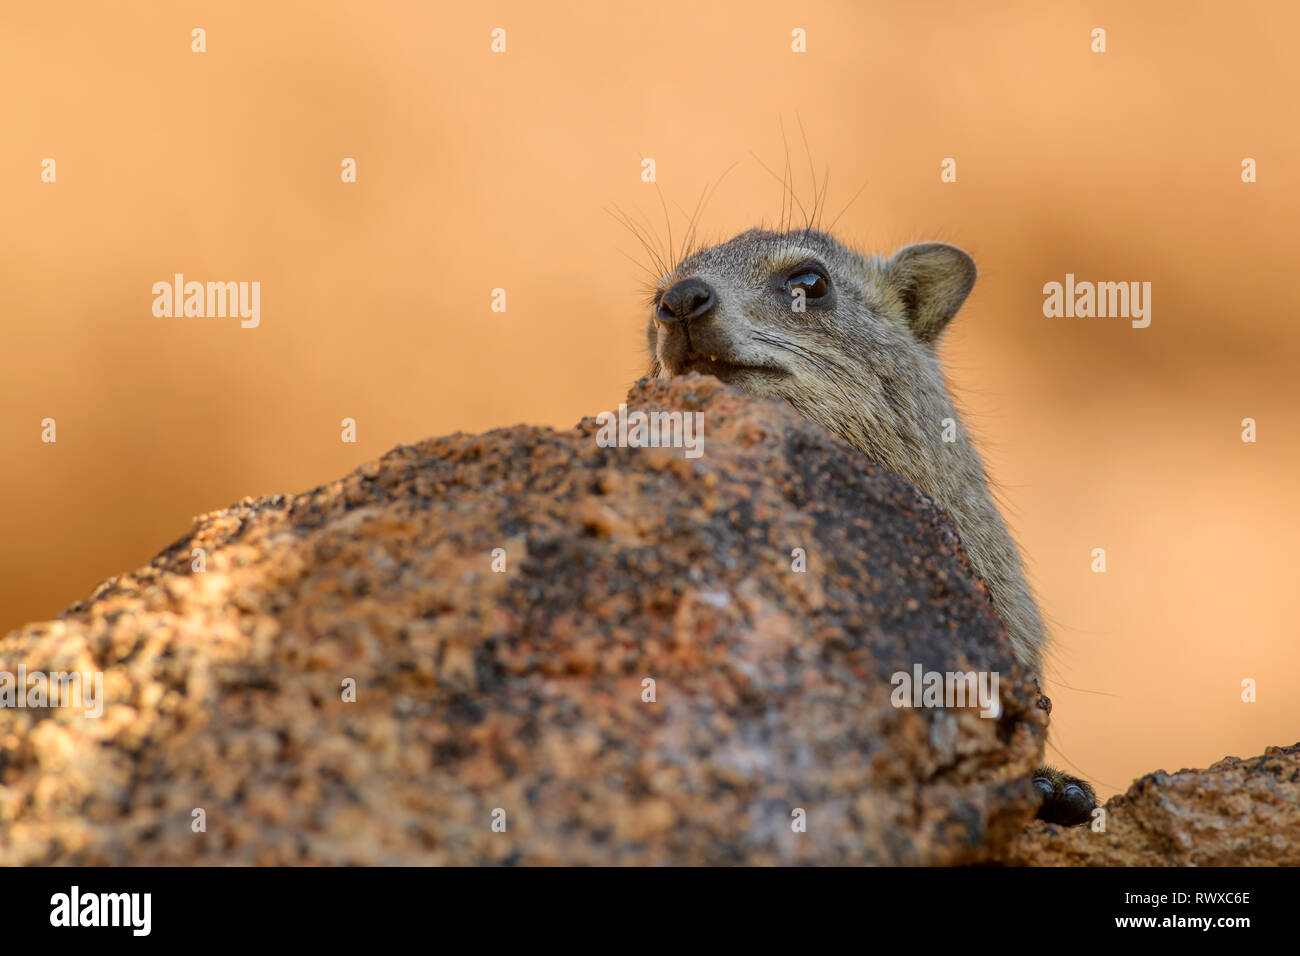 Rock commun - Hyrax Procavia capensis, de petits mammifères et des montagnes de l'Afrique, la Namibie hillls. Banque D'Images